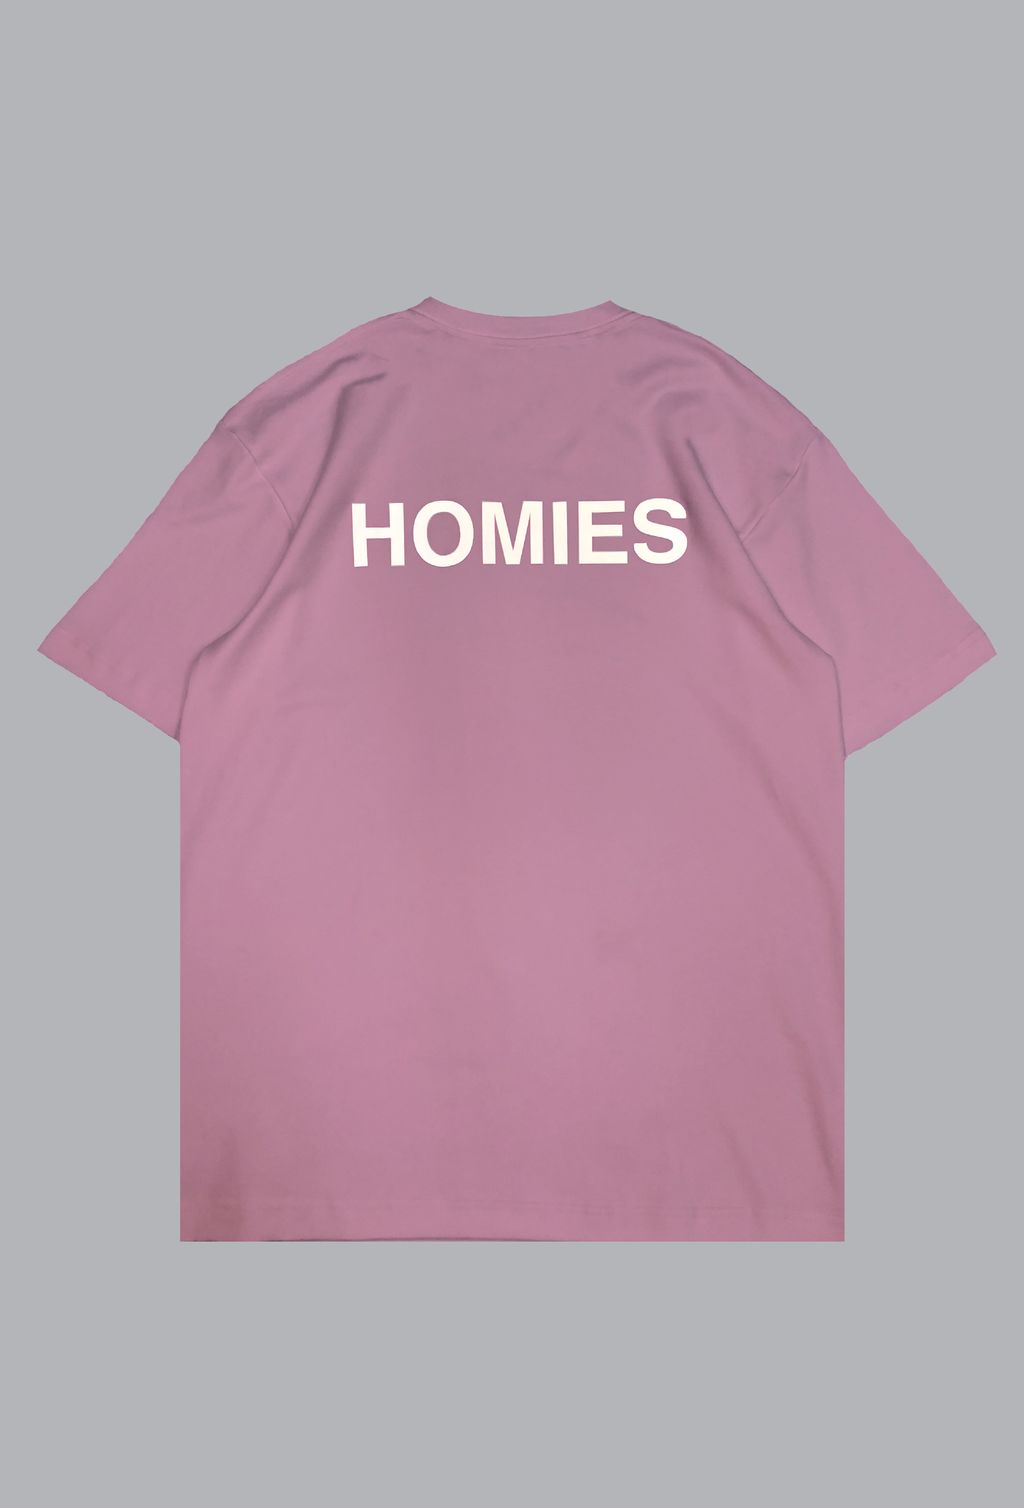 homies pink back-01.jpg